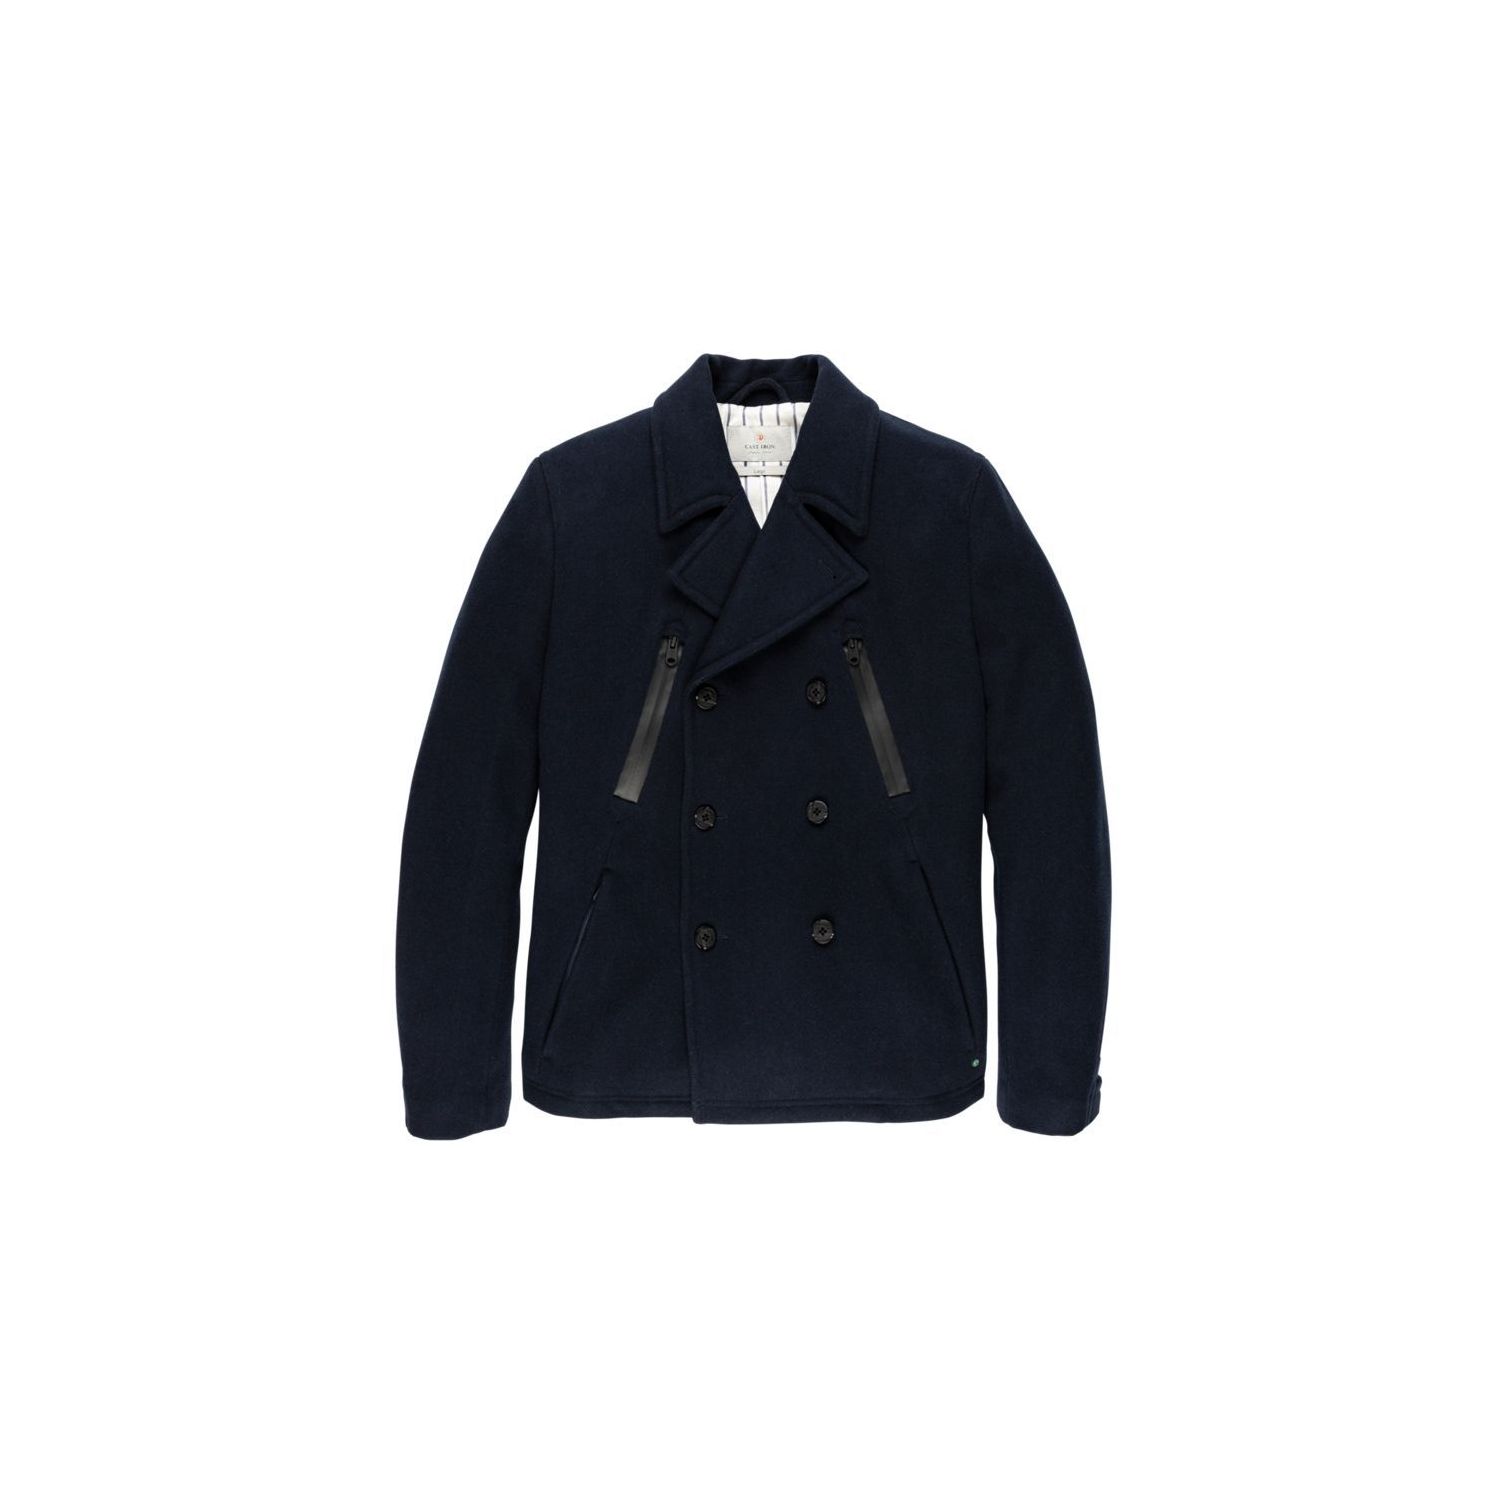 Cast iron button jacket hidden twill wool salute